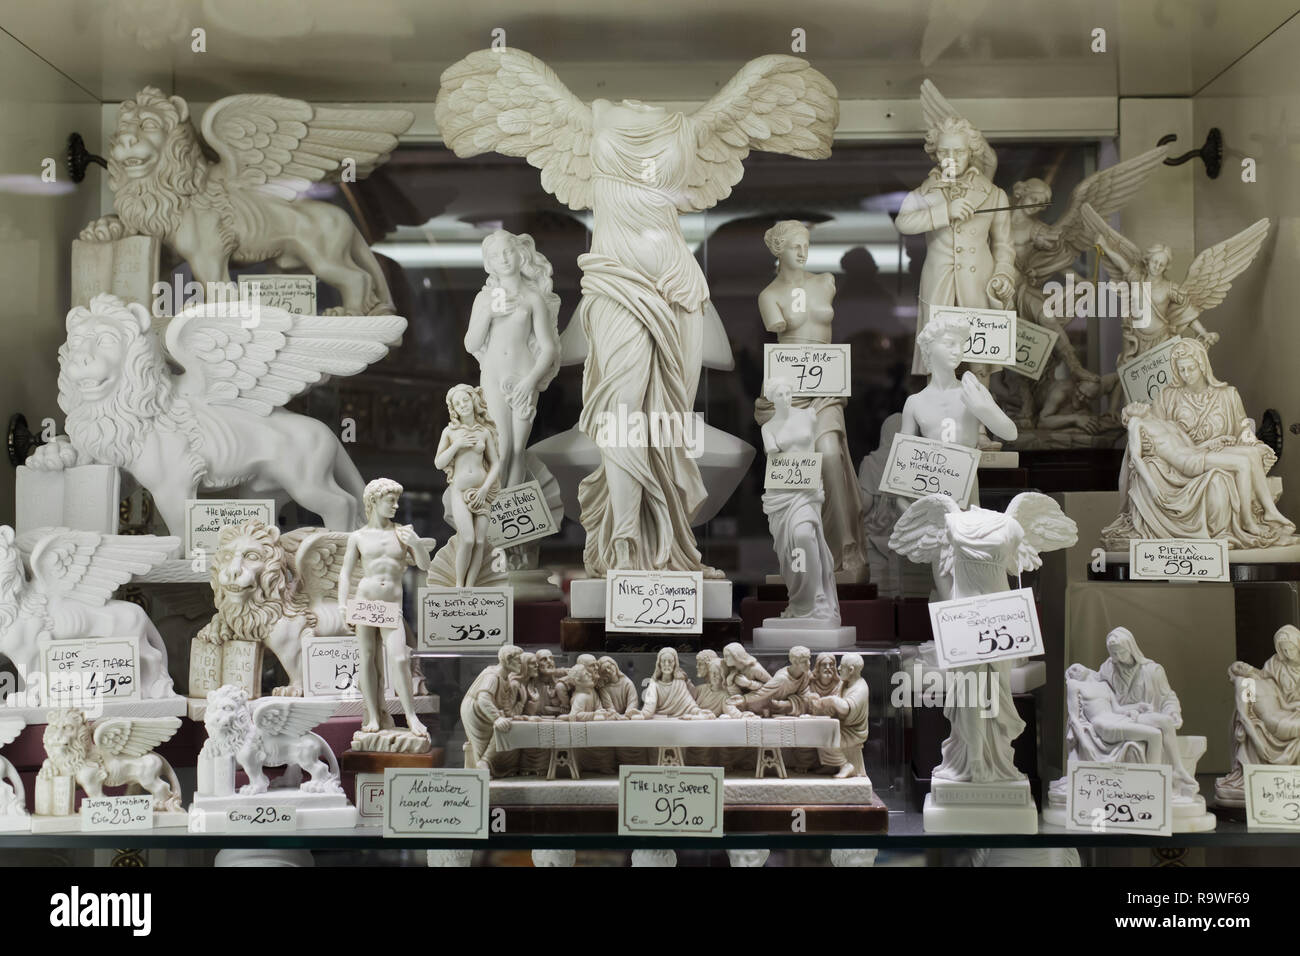 Statuettes en albâtre fait main en vente dans un magasin de souvenirs à  Venise, Italie. Statuettes de Winged Nike de Samothrace, Aphrodite de  Milos, David de Michel-Ange Buonarroti, Vénus de Sandro Botticelli,